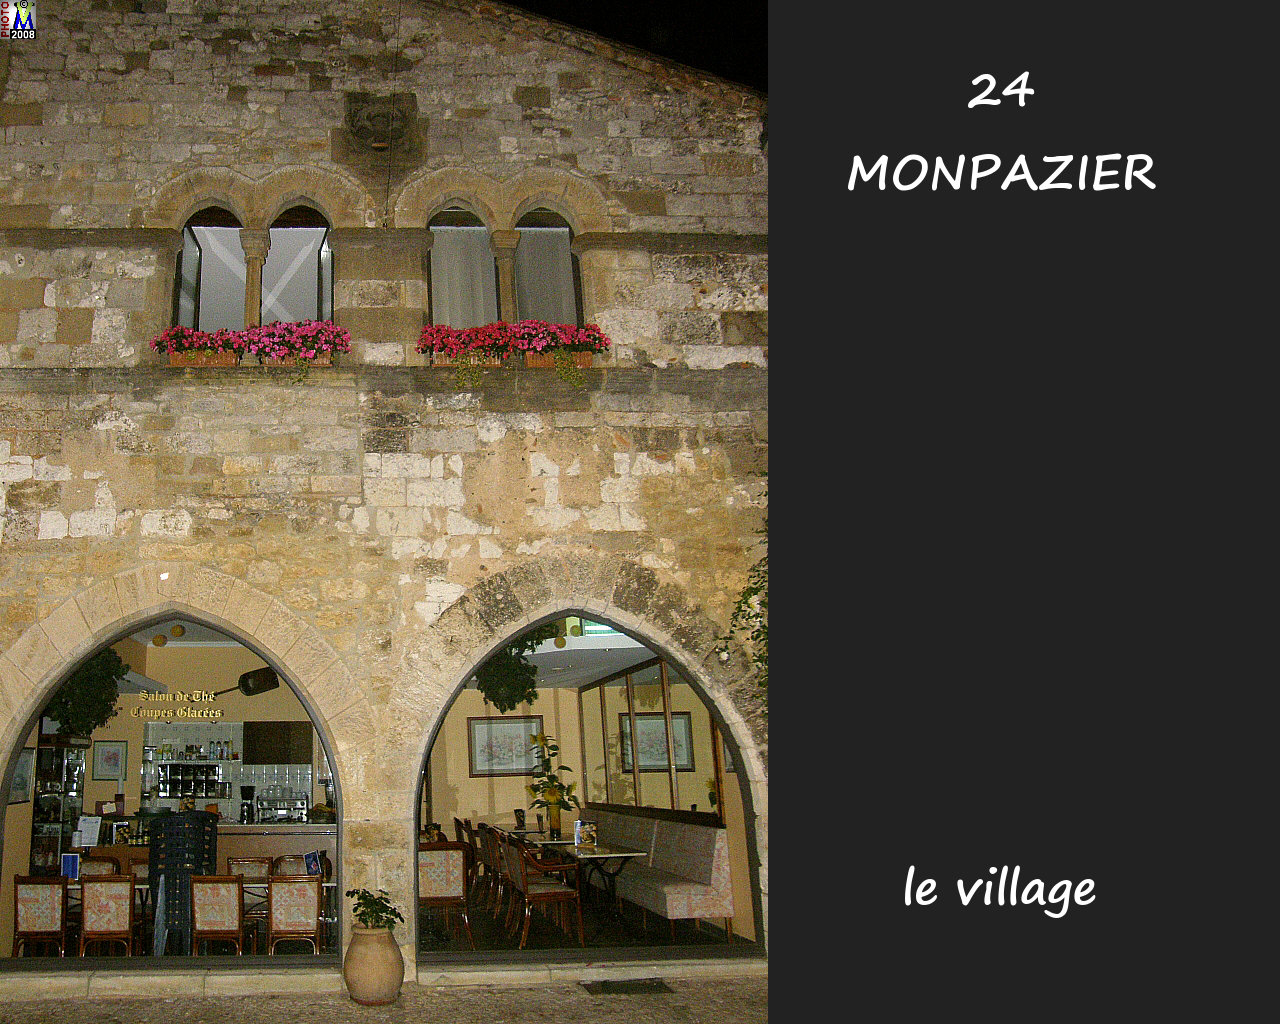 24MONPAZIER_village_150.jpg